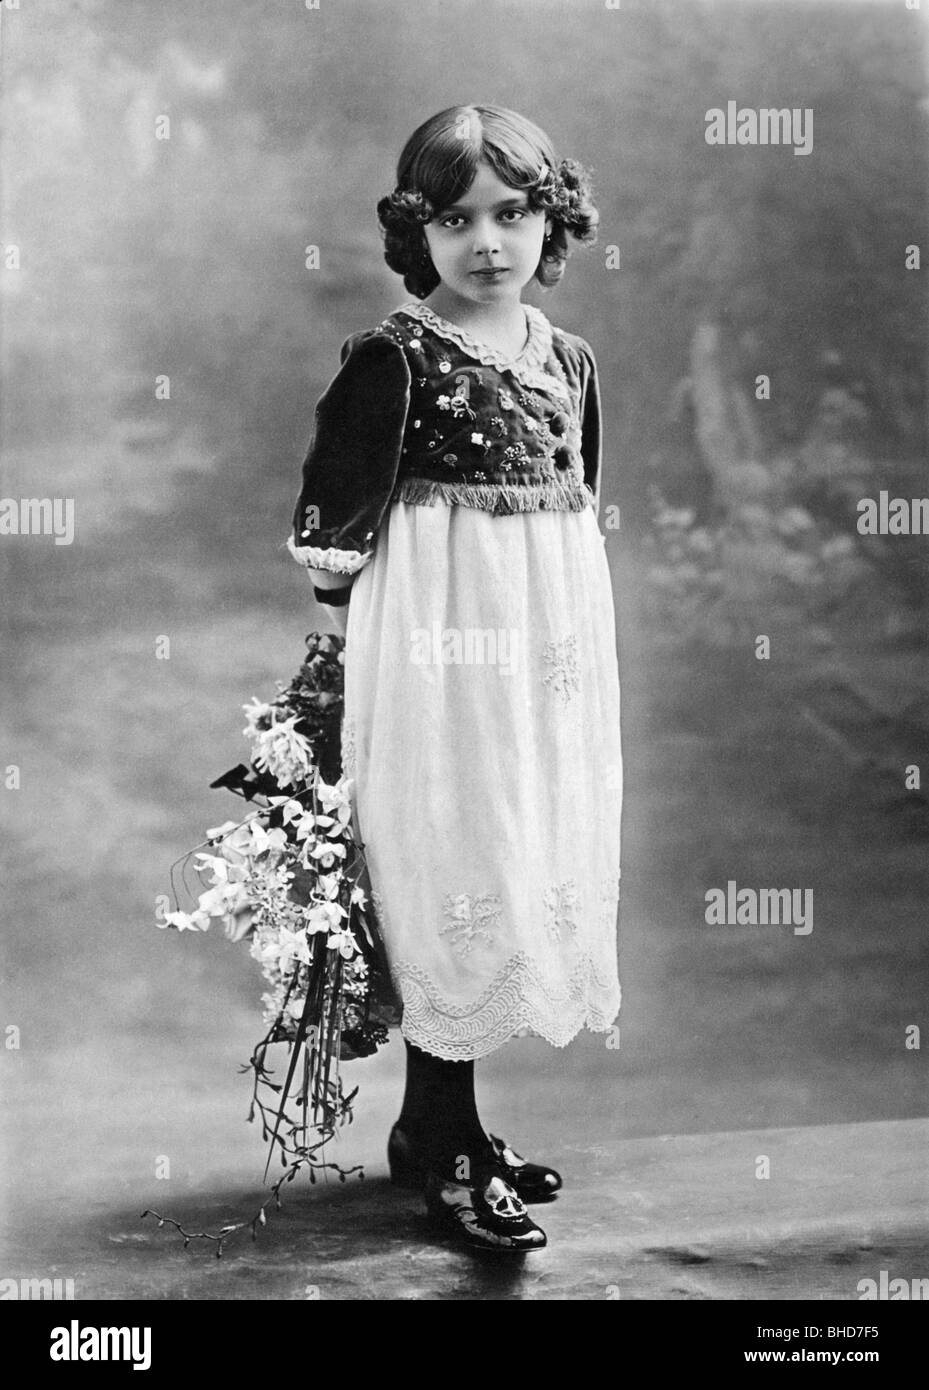 personnes, enfants, portrait - fille, avec bouquet de fleurs, pleine longueur, vers 1910, Banque D'Images